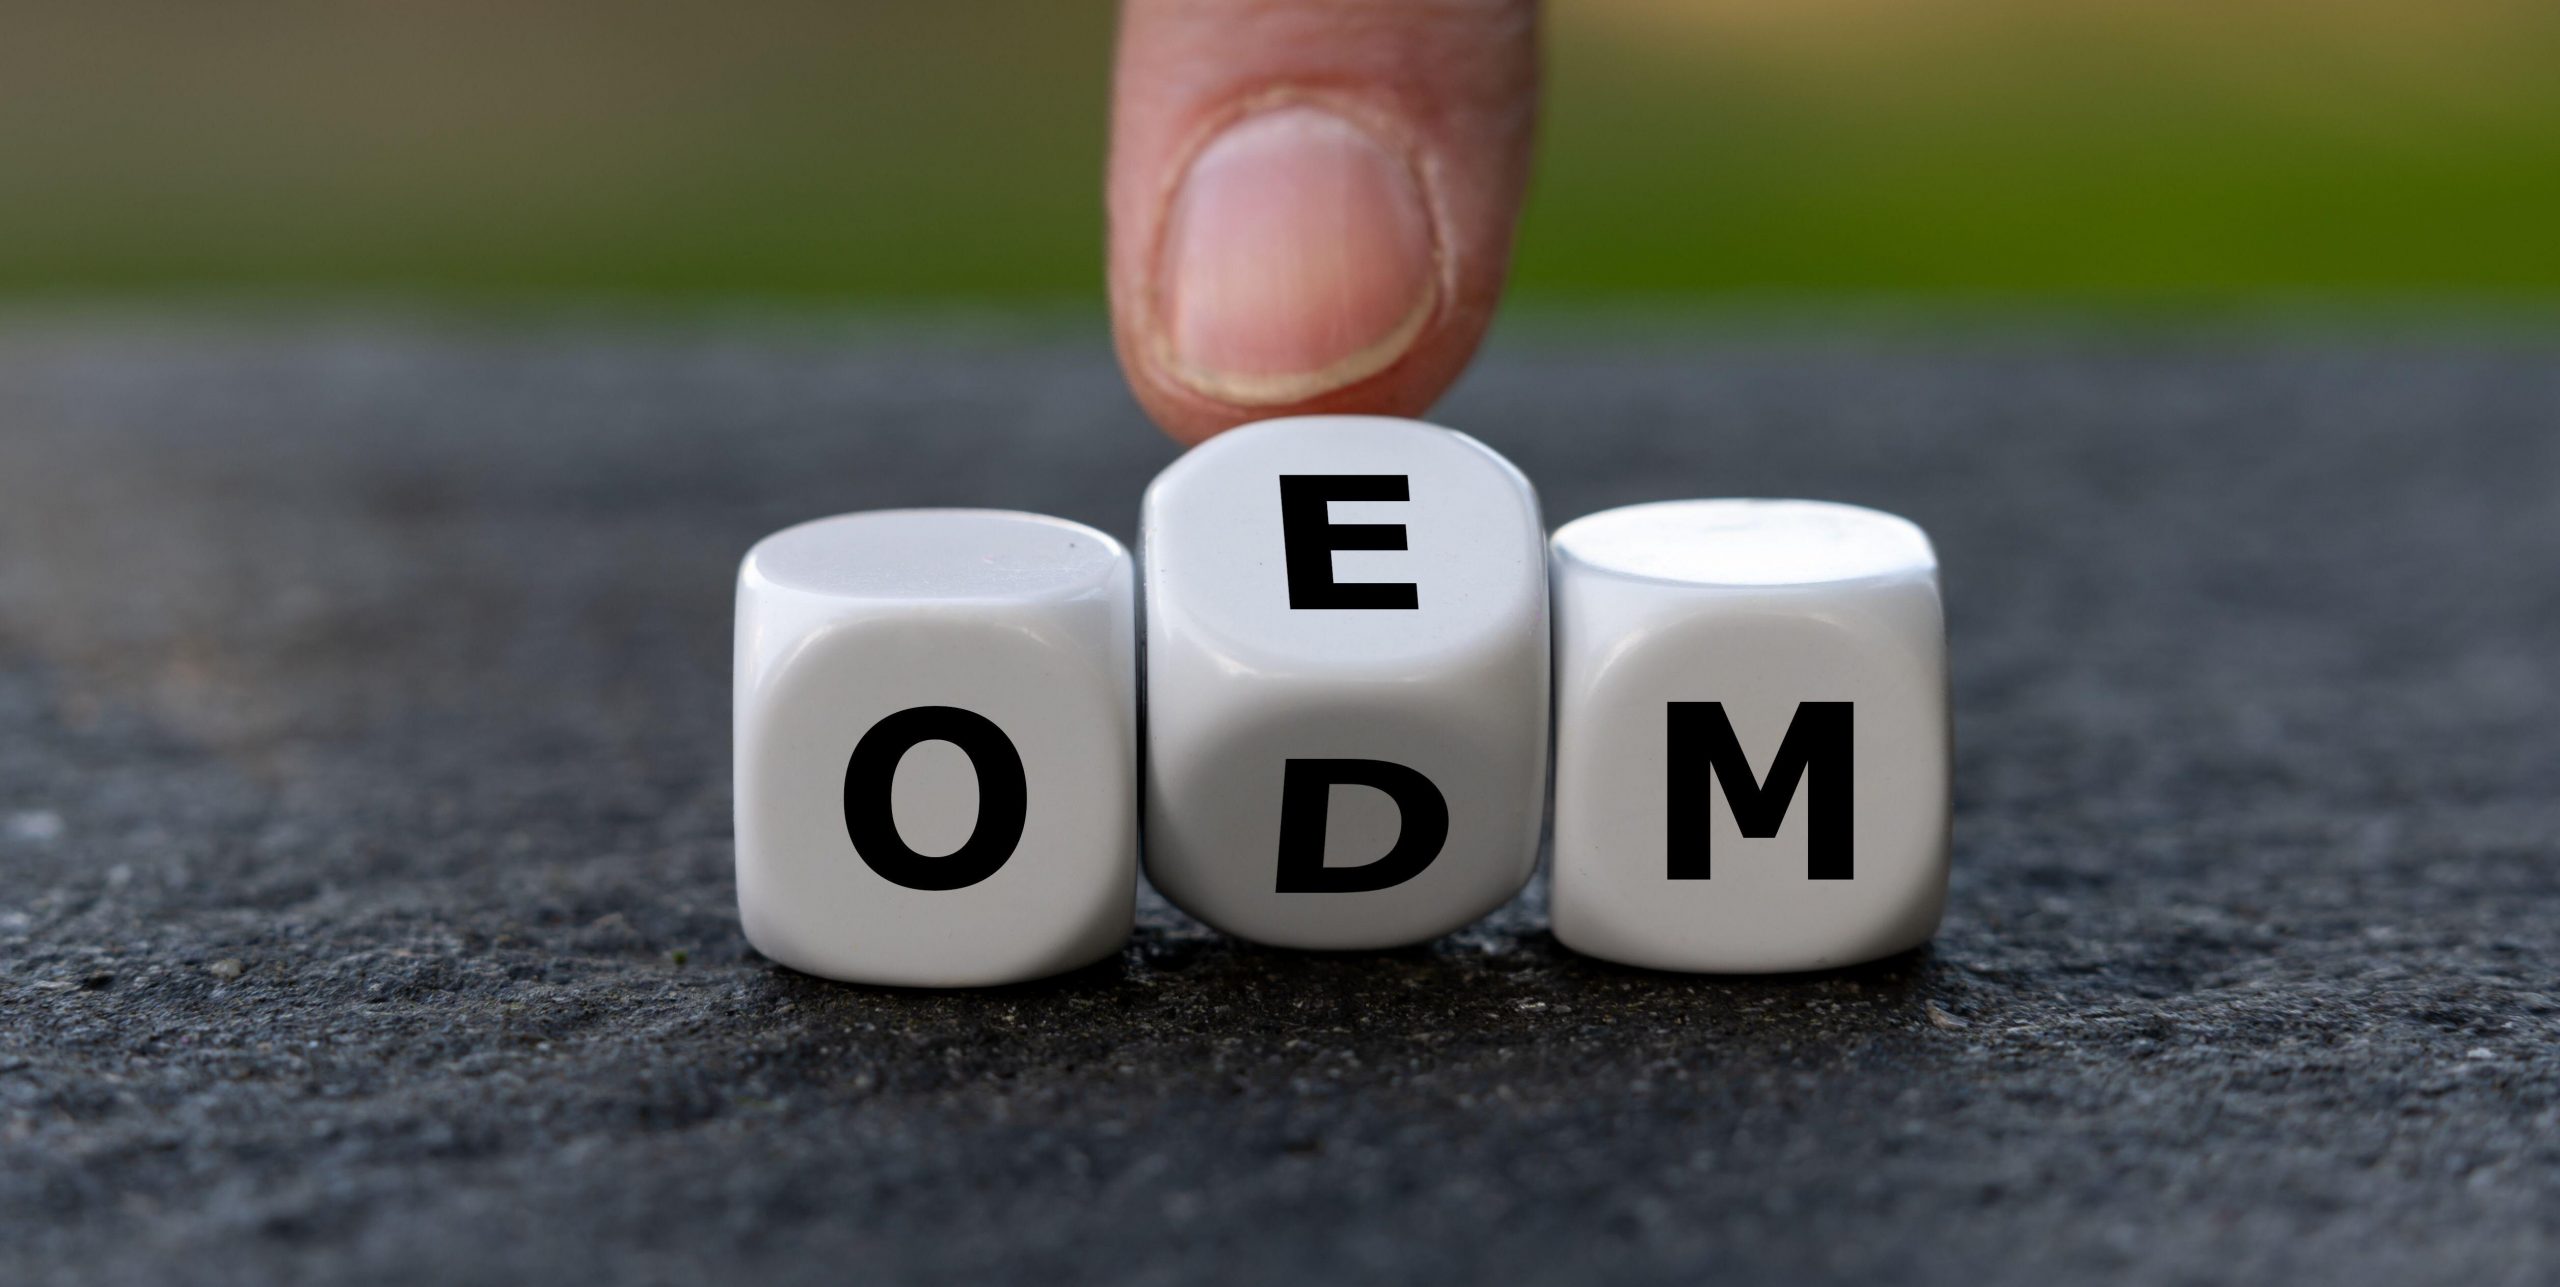  ODM و OEM چیست؟